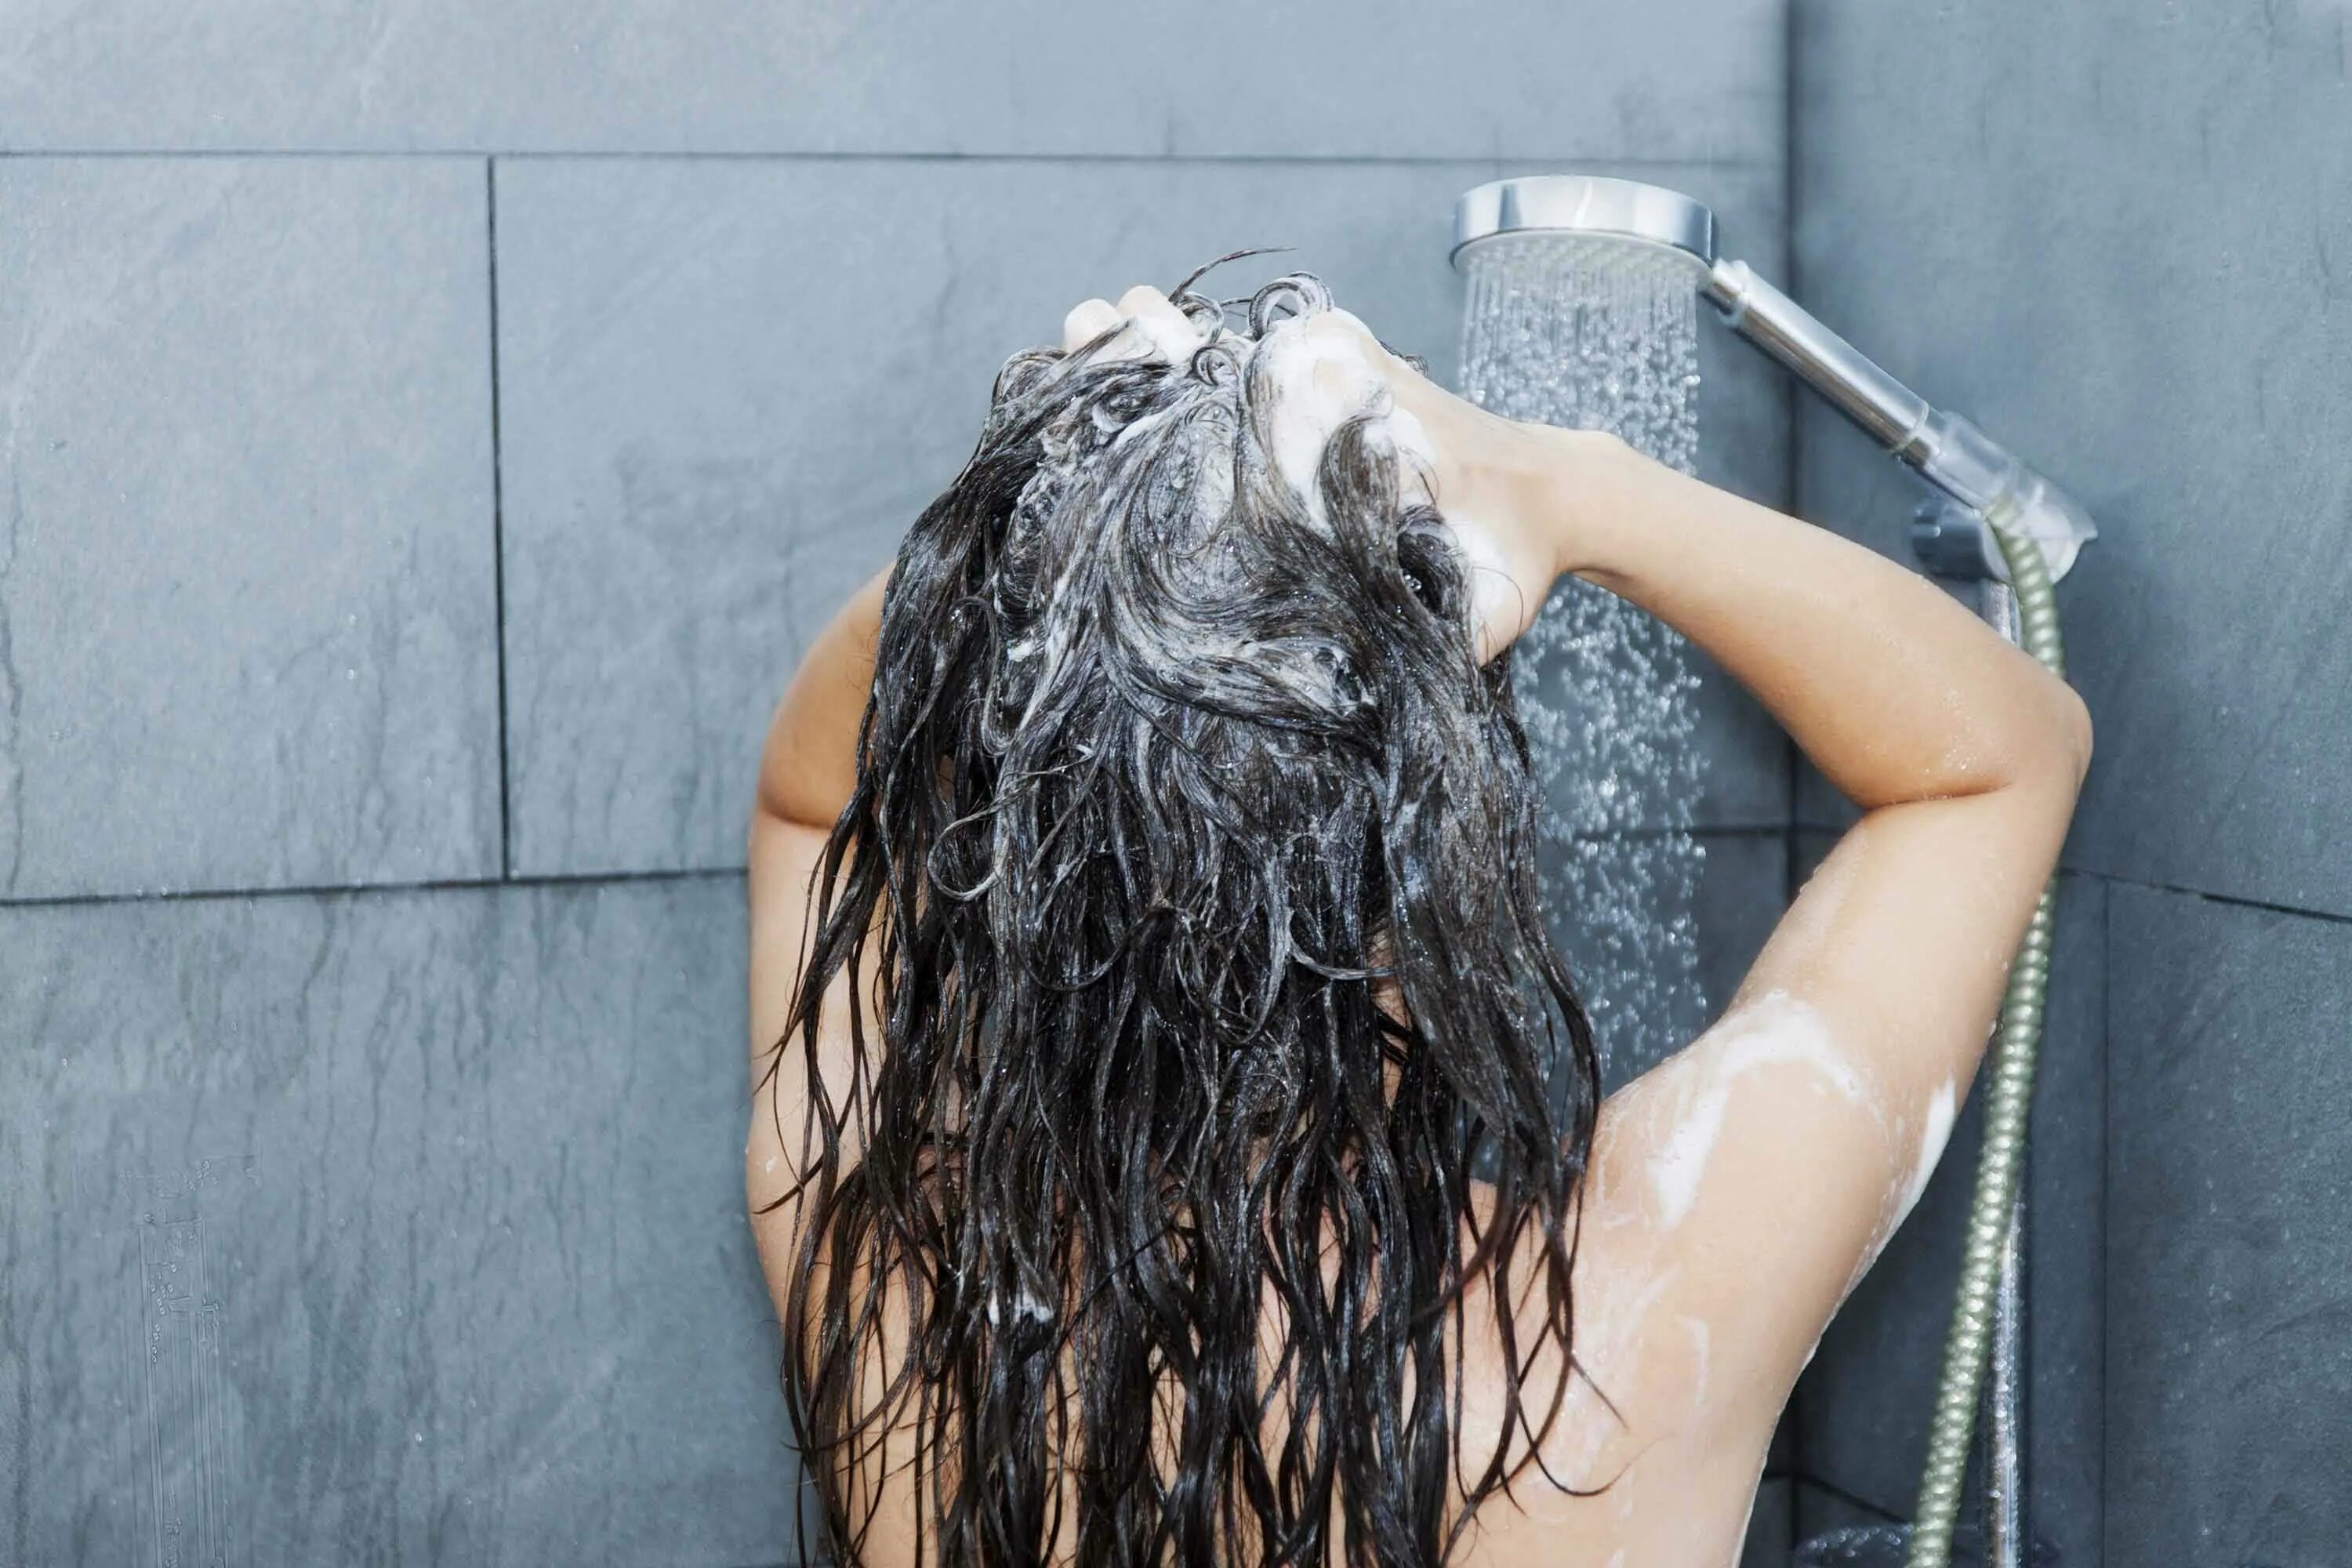 Состояние после душа. Мытье волос. Фотосессия с мокрыми волосами. Девушка с мокрыми волосами. Мыть голову.